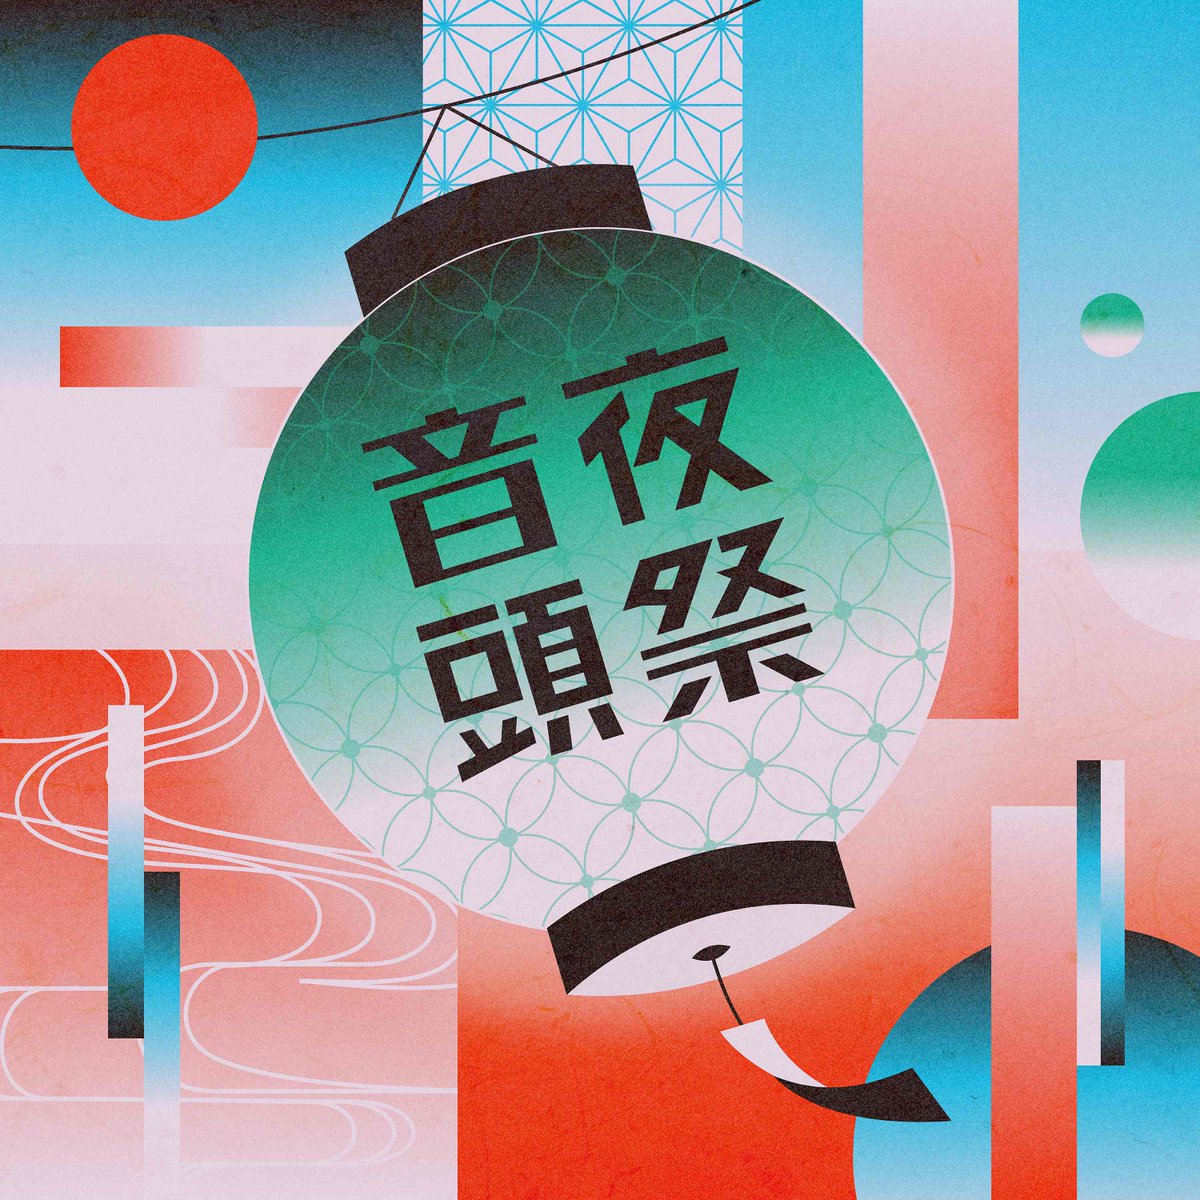 Ryokuoushoku Shakai Dropping Its Matsuri Song “Yomatsuri Ondo” Tomorrow! New Artist Photo Revealed!

erj.lnk.to/eQY0qA

@ryokushaka
#緑黄色社会 #リョクシャカ #RyokuoushokuShakai #Matsuri #Festival #Japanesemusic #jpop #Japanesepop #MusicChannel_J